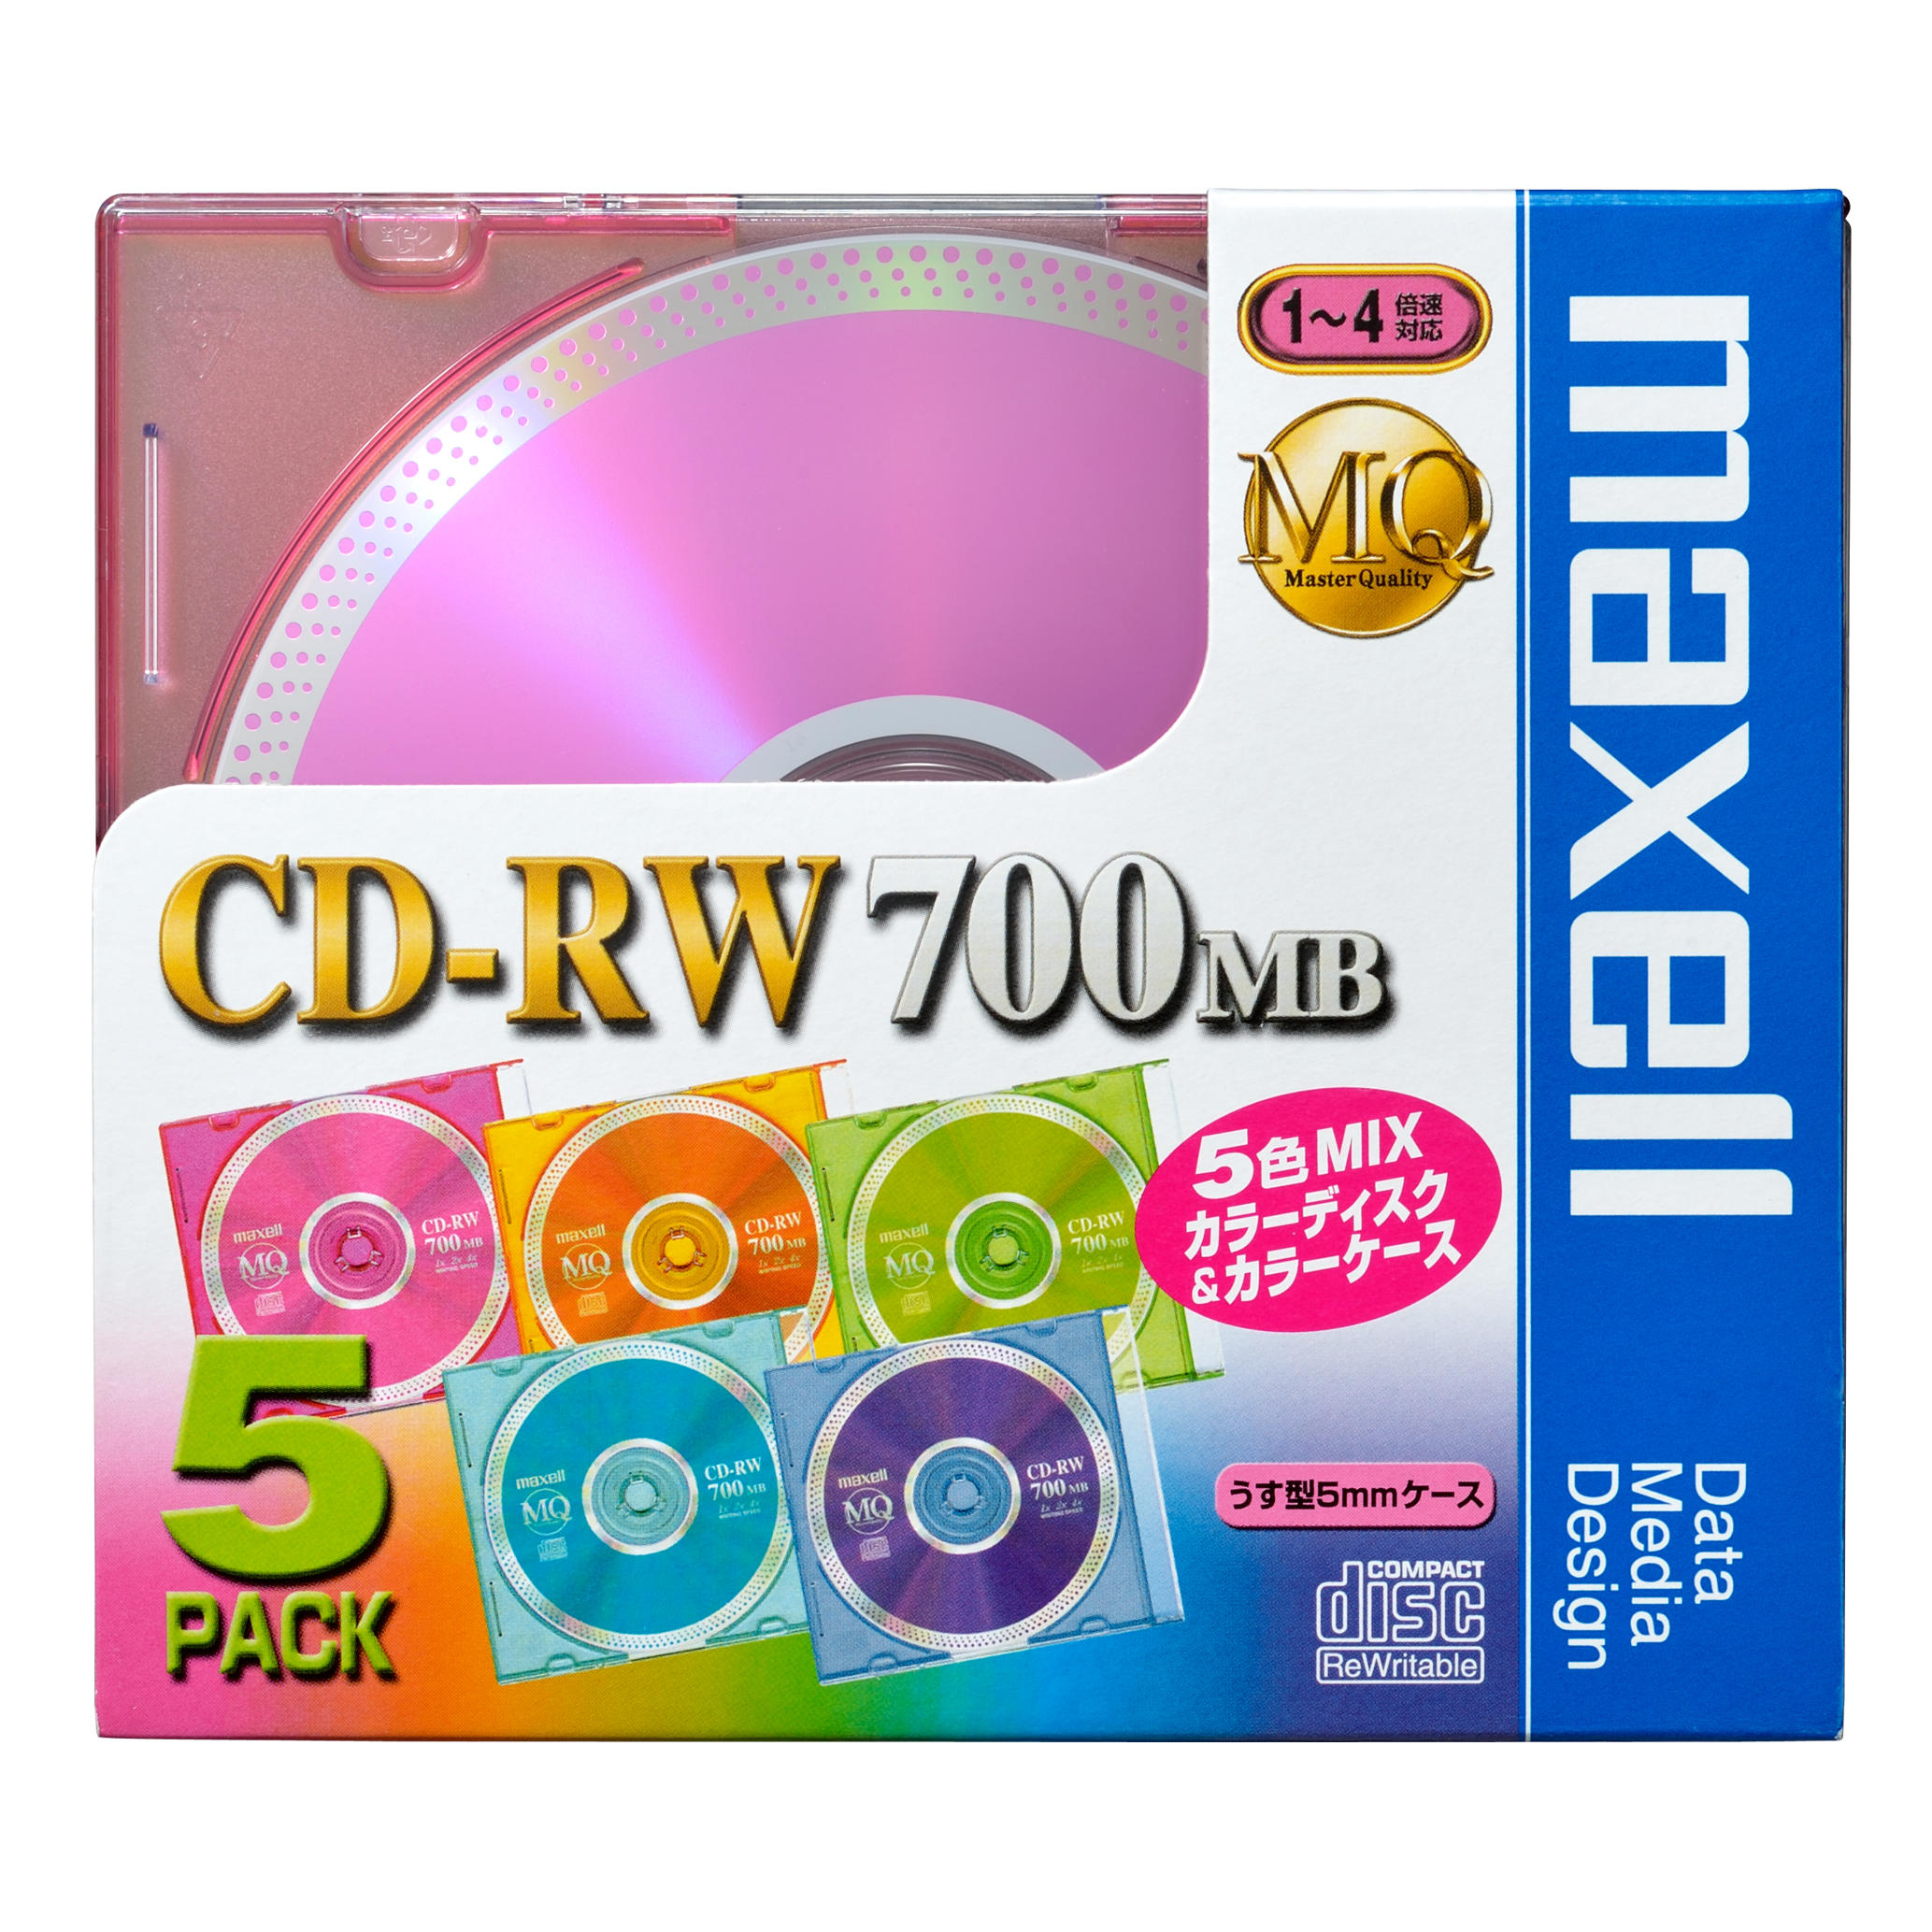 9864円 【2022春夏新色】 maxell PC DATA用 CD-RW CDRW80MQ.S1P10S 10枚